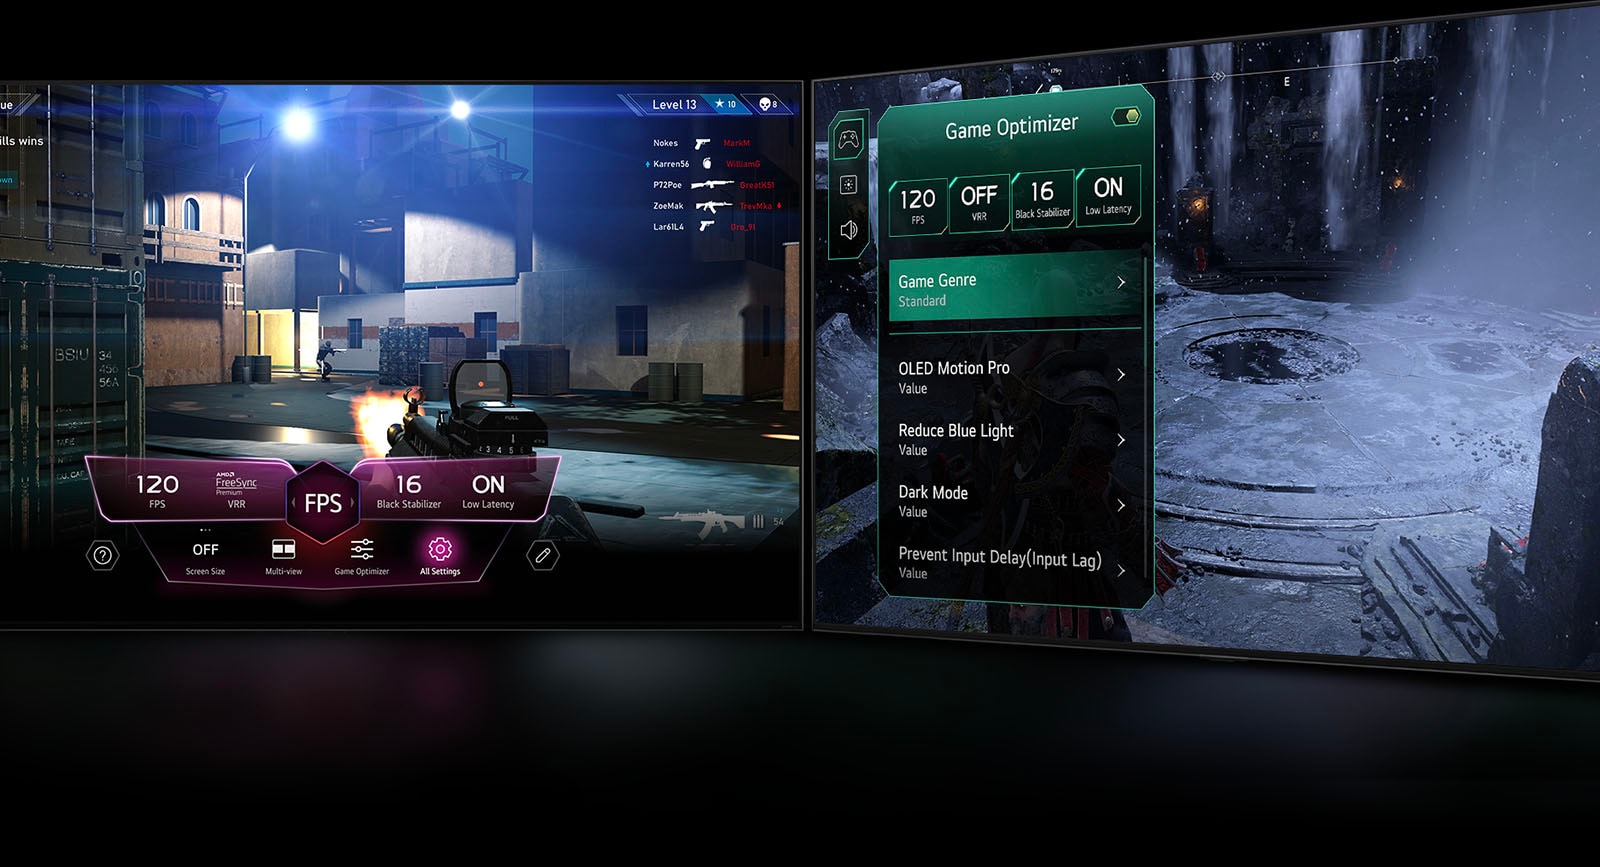 Scéna zo strieľačky s herným panelom, ktorý sa zobrazuje nad obrazovkou počas hrania. Tmavá zimná scéna s ponukou Game Optimizer, ktorá sa zobrazuje nad hrou. 